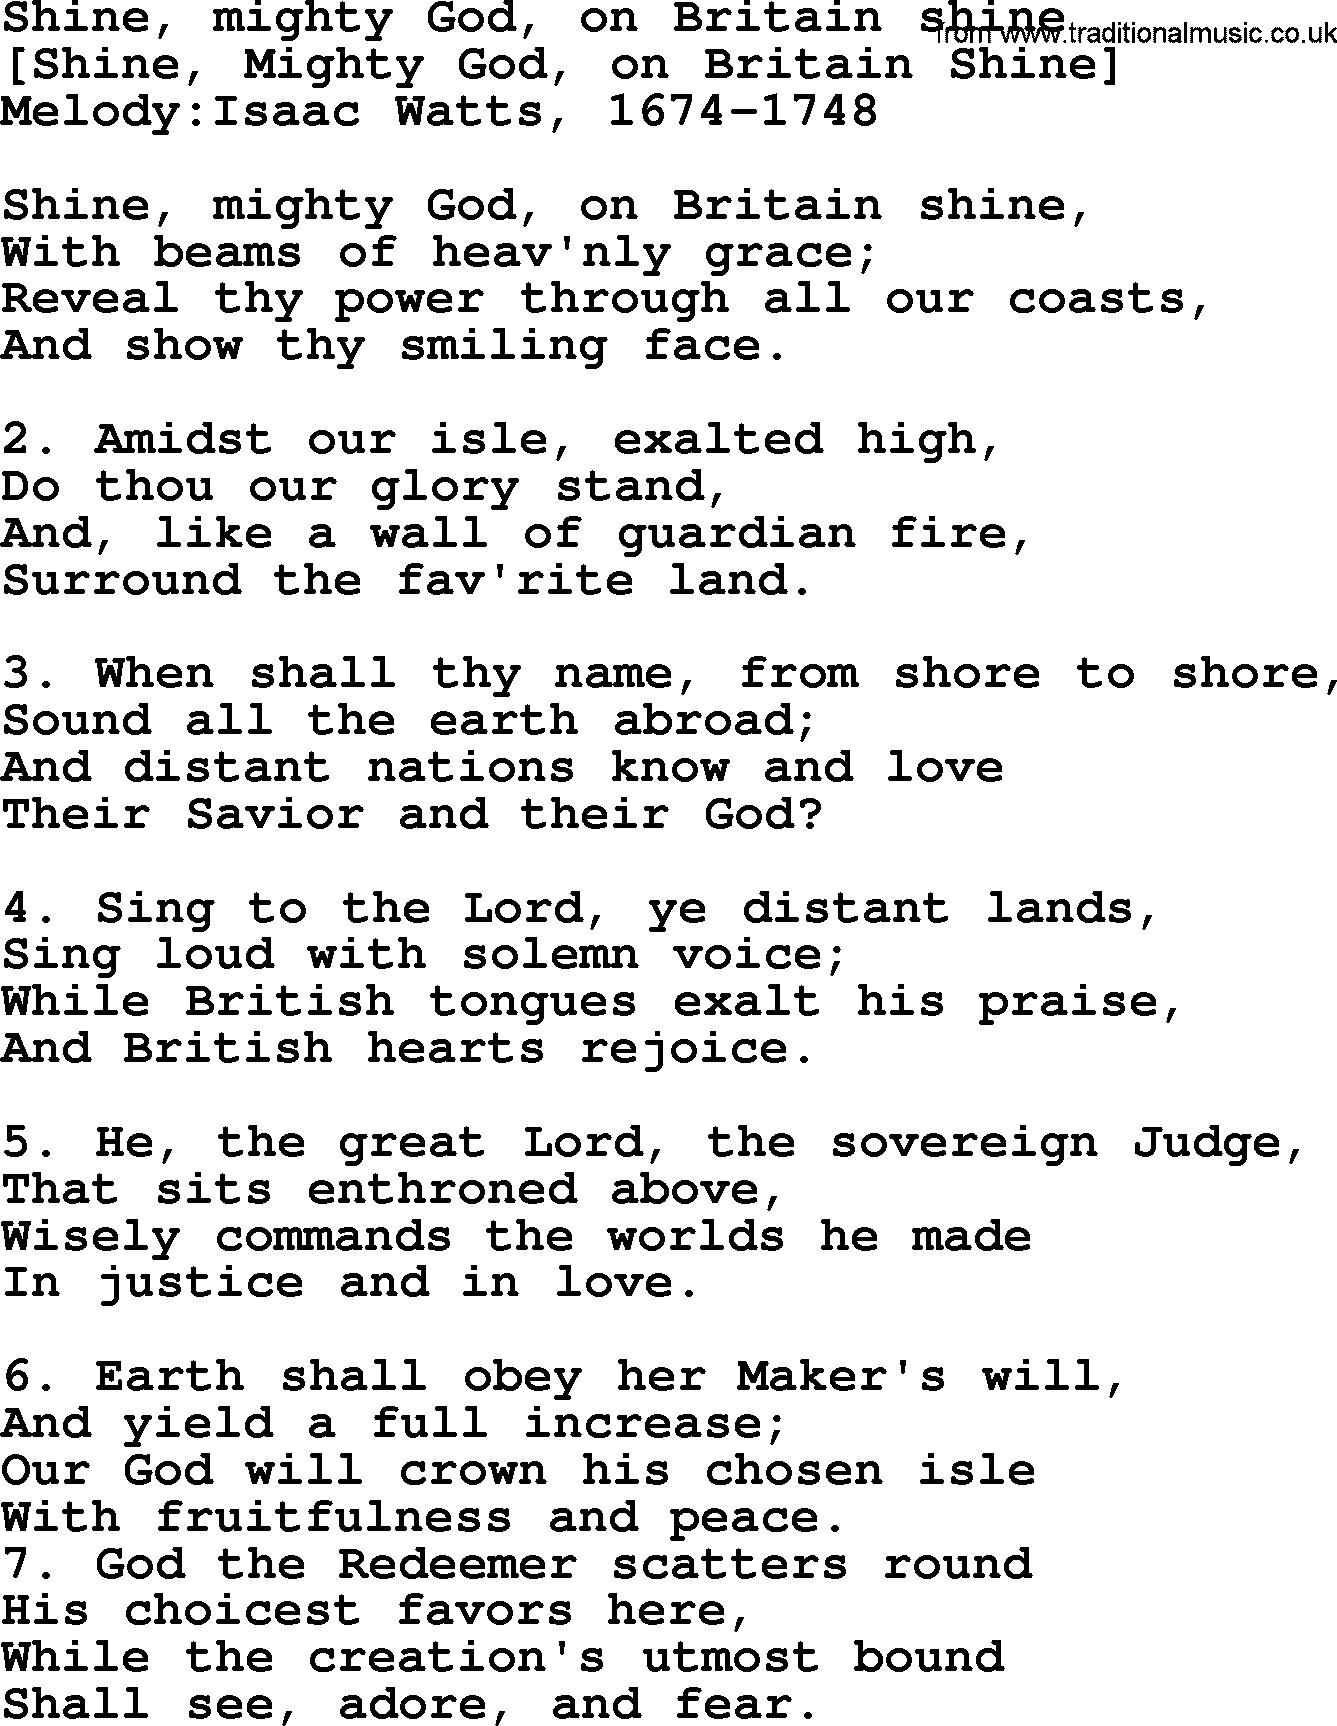 Old English Song: Shine, Mighty God, On Britain Shine lyrics